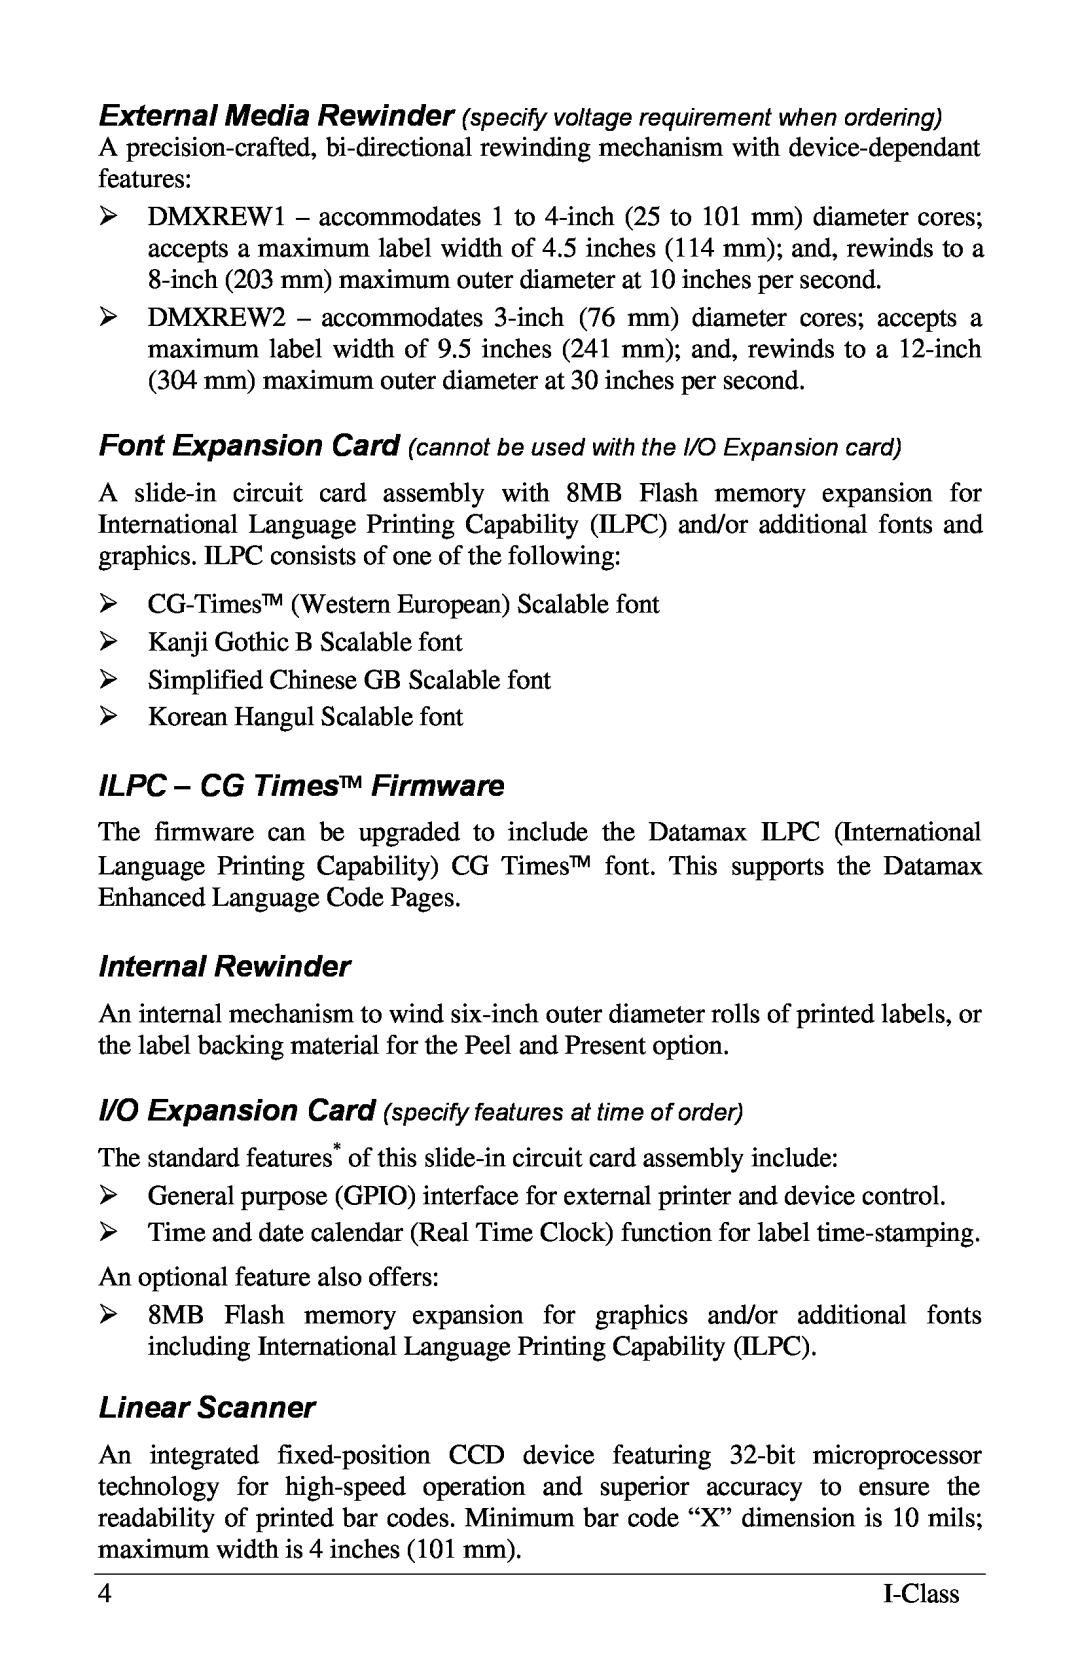 Xerox I Class manual ILPC – CG Times Firmware, Internal Rewinder, Linear Scanner 